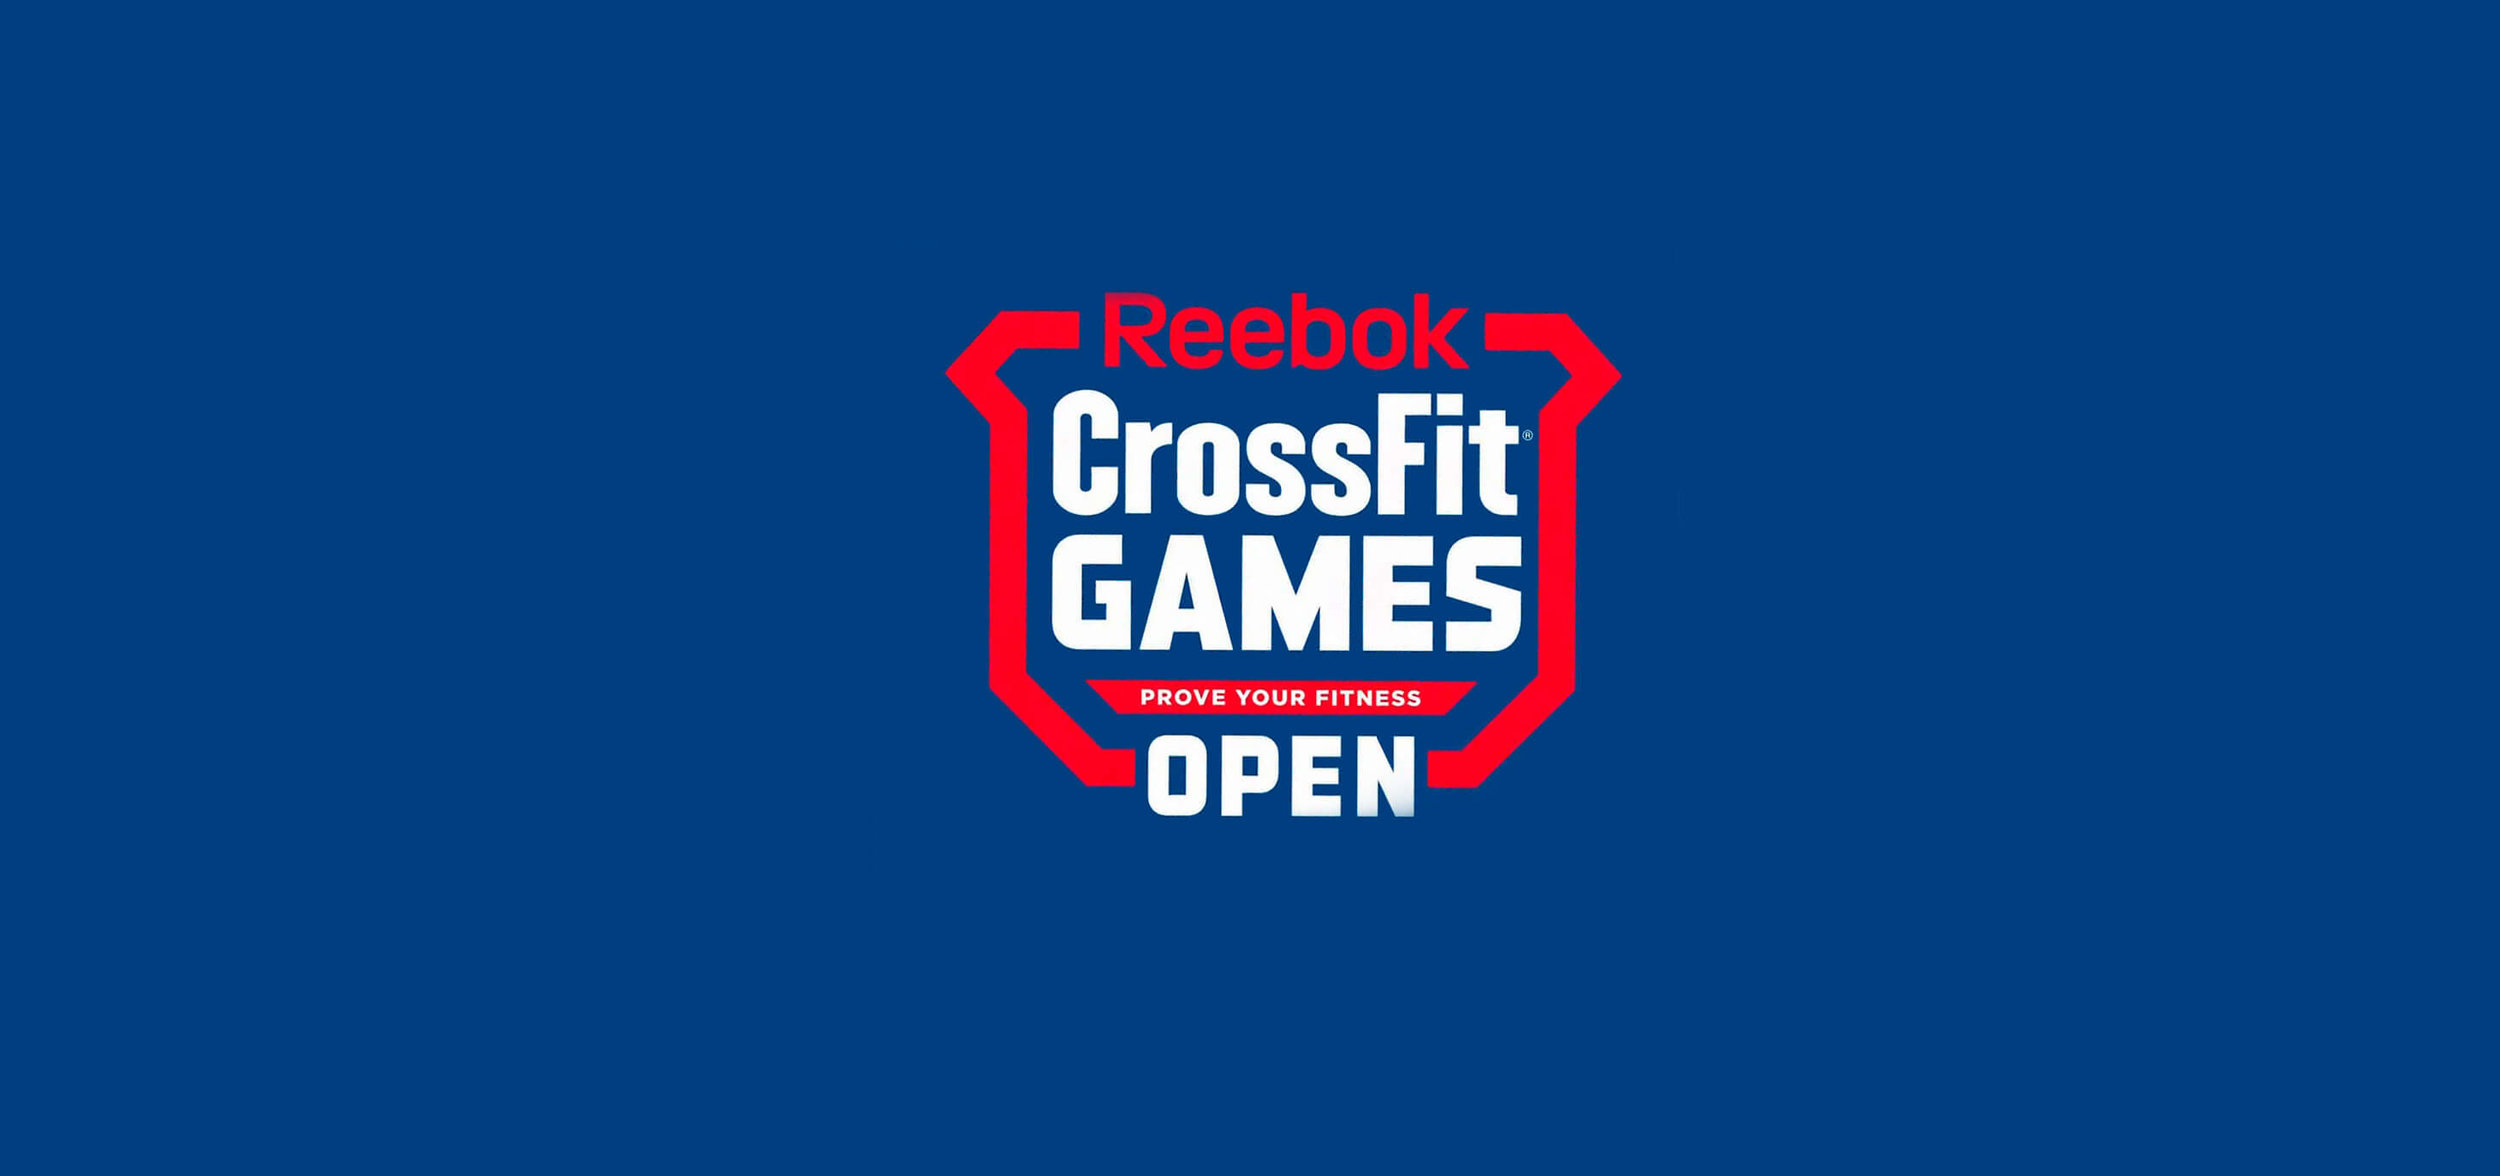 reebok crossfit games open 2018